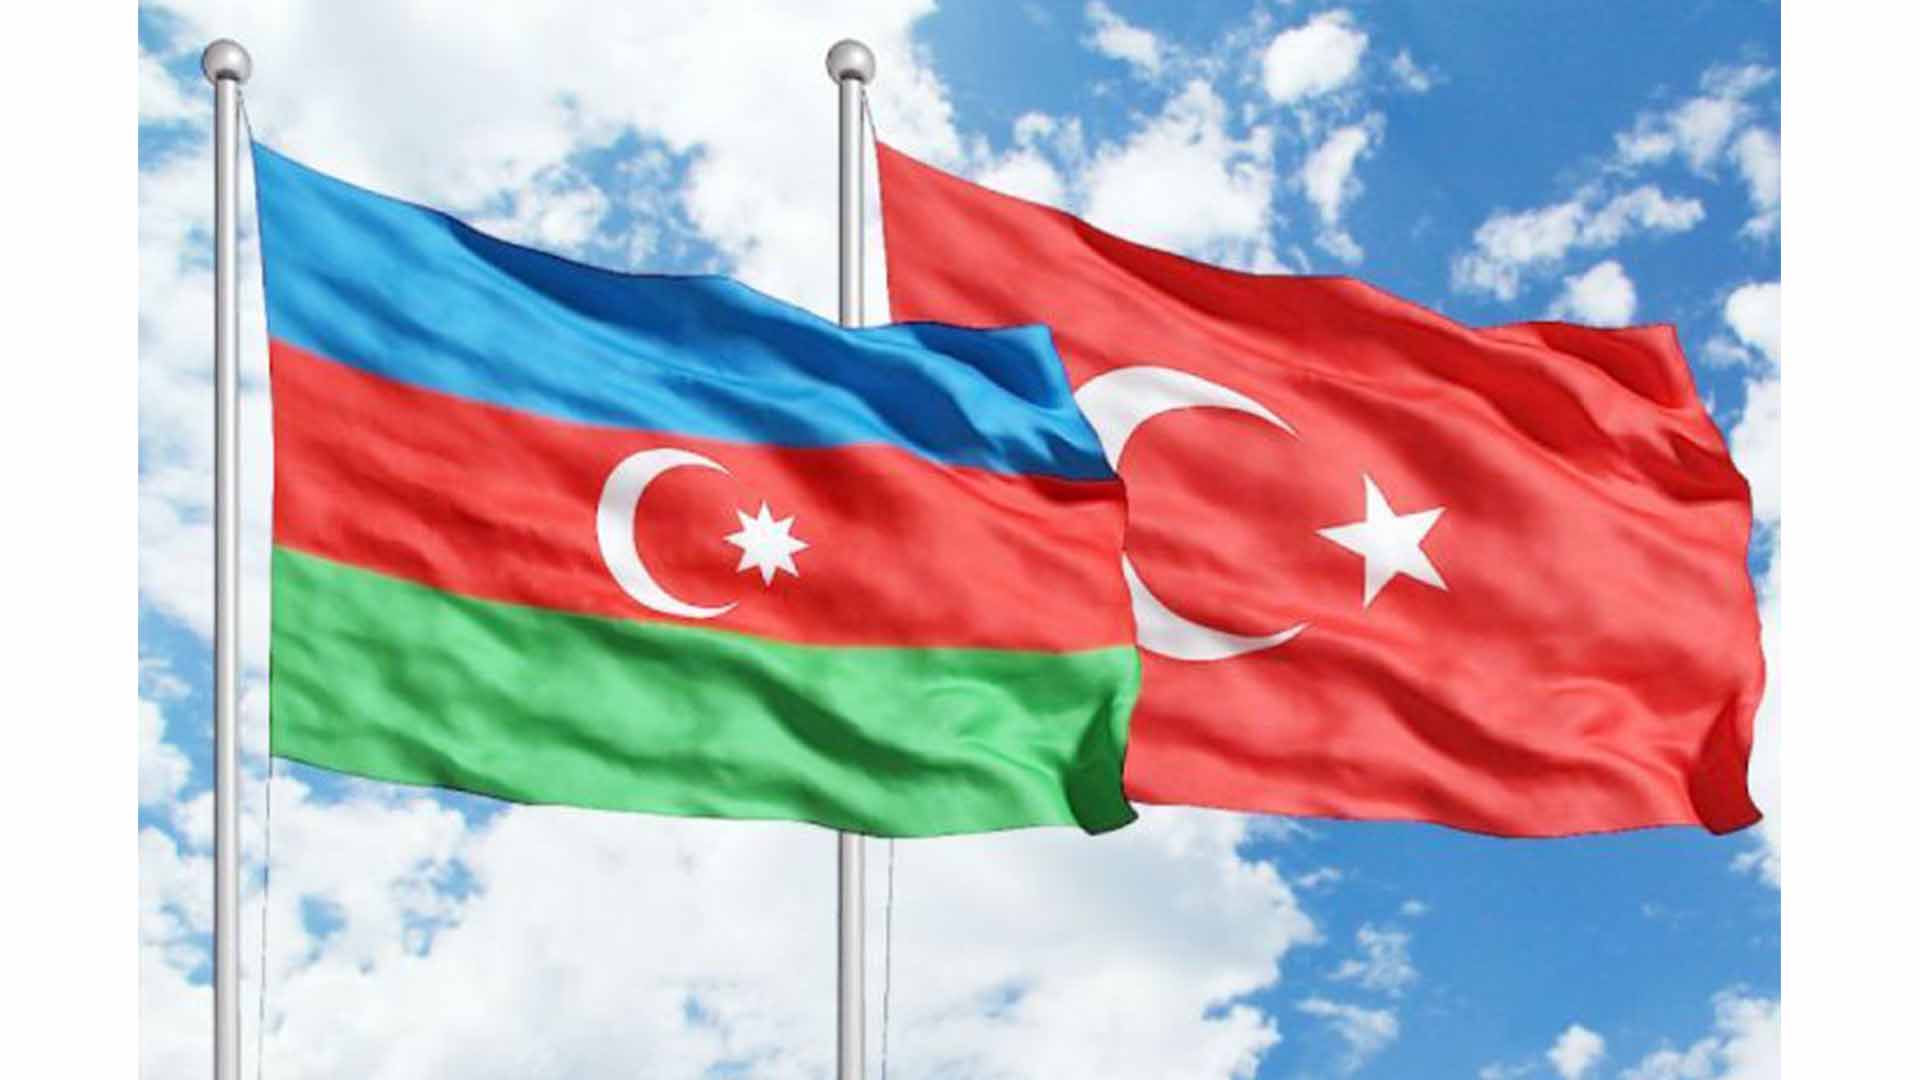 Azərbaycan-Türkiyə birgə universiteti yaradılmalıdır - TƏKLİF